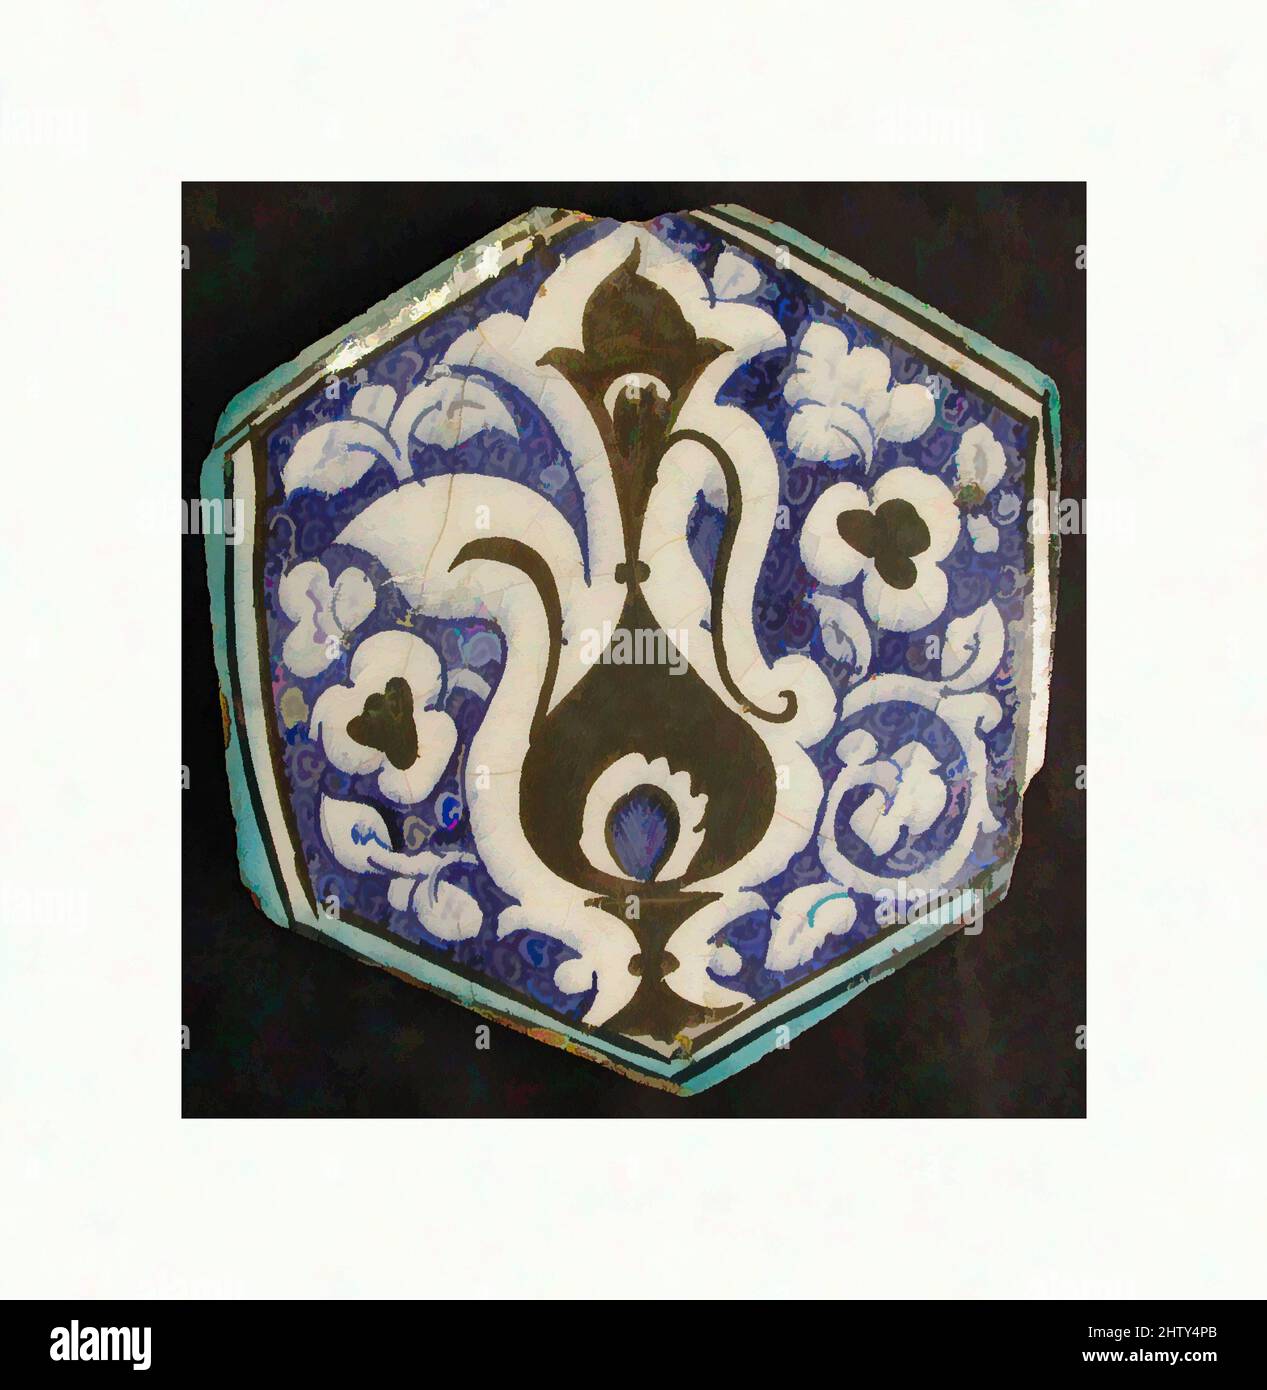 Art inspiré par le carreau hexagonal, première moitié du 15th siècle, attribué à la Syrie, corps composite; sous-vernis peint, HT. 7 1/8 po (18,1 cm), céramique-carreaux, le fond de spirales étroitement enroulées et l'utilisation de pigments sous-glaçure noir, bleu, et turquoise trahissent la provenance syrienne, les œuvres classiques modernisées par Artotop avec une touche de modernité. Formes, couleur et valeur, impact visuel accrocheur sur l'art émotions par la liberté d'œuvres d'art d'une manière contemporaine. Un message intemporel qui cherche une nouvelle direction créative. Artistes qui se tournent vers le support numérique et créent le NFT Artotop Banque D'Images